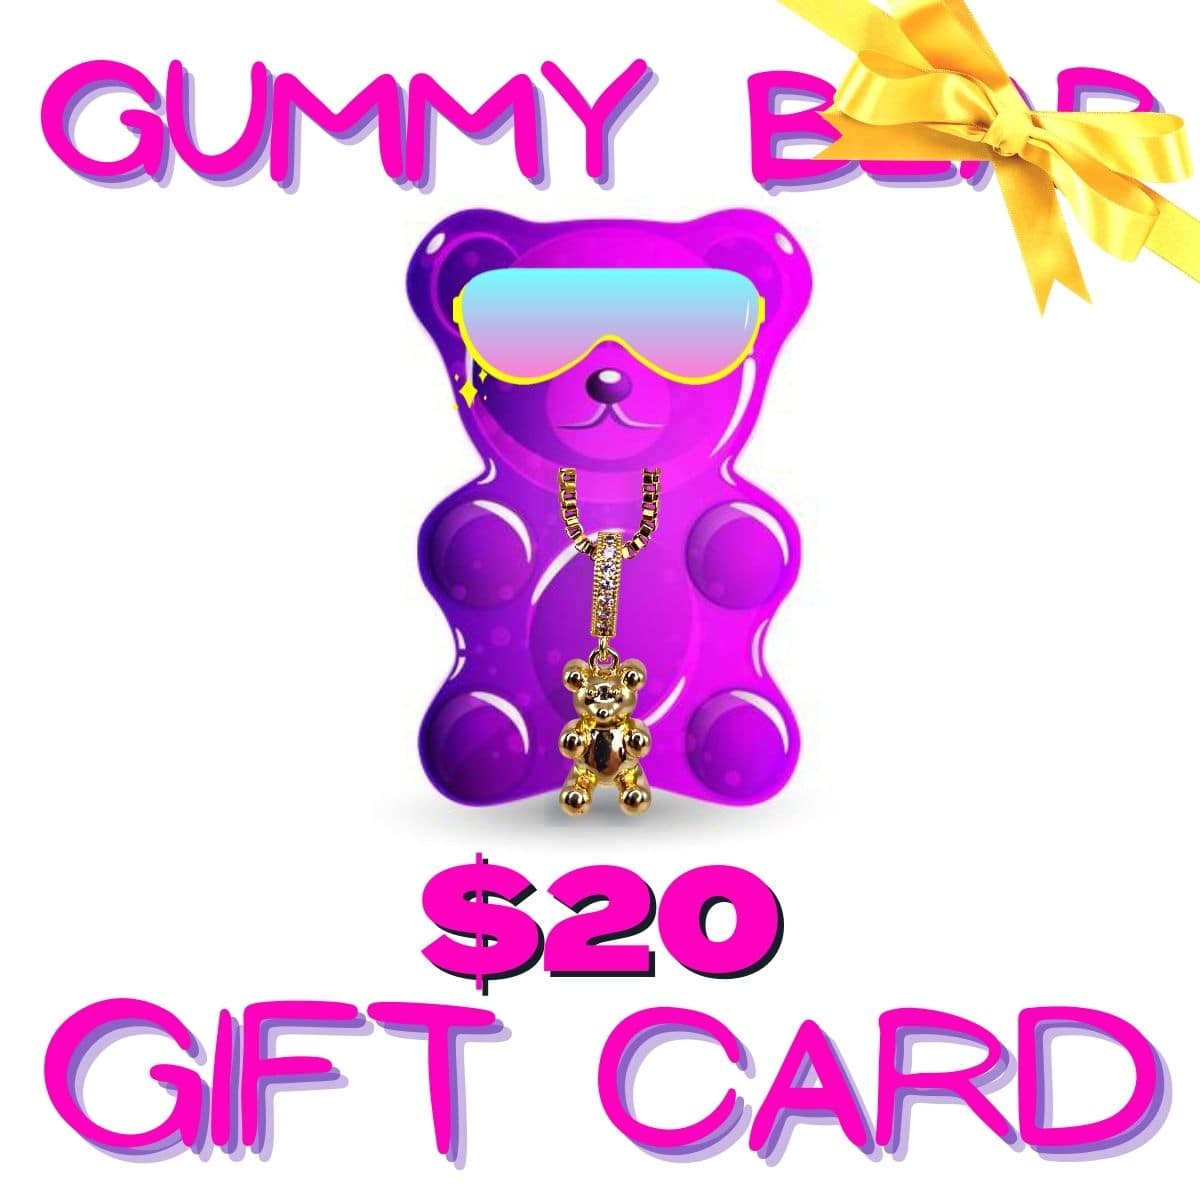 gummy bear bling $20 gift card - gummy bear bling